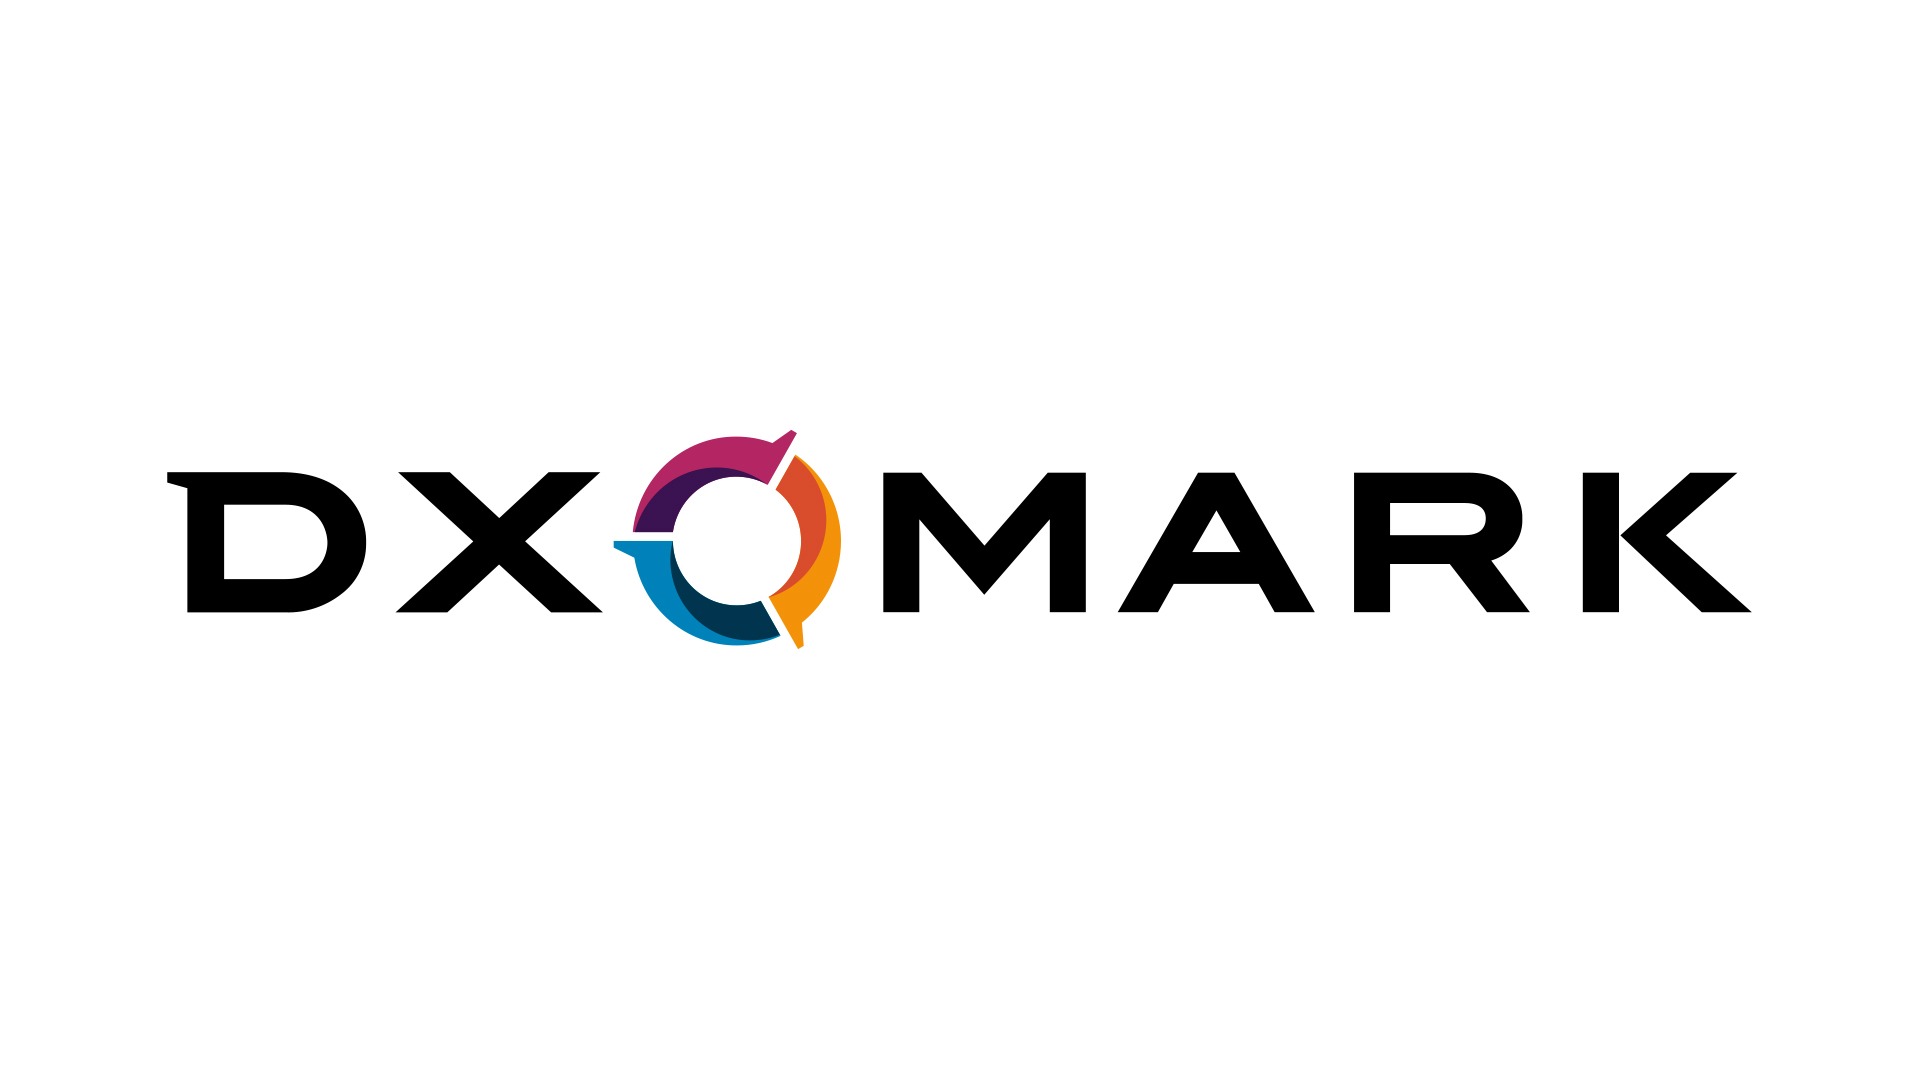 آیا تقلب DXOMARK در بررسی محصولات حقیقت دارد؟ پاسخ مدیر این مجموعه چیست؟